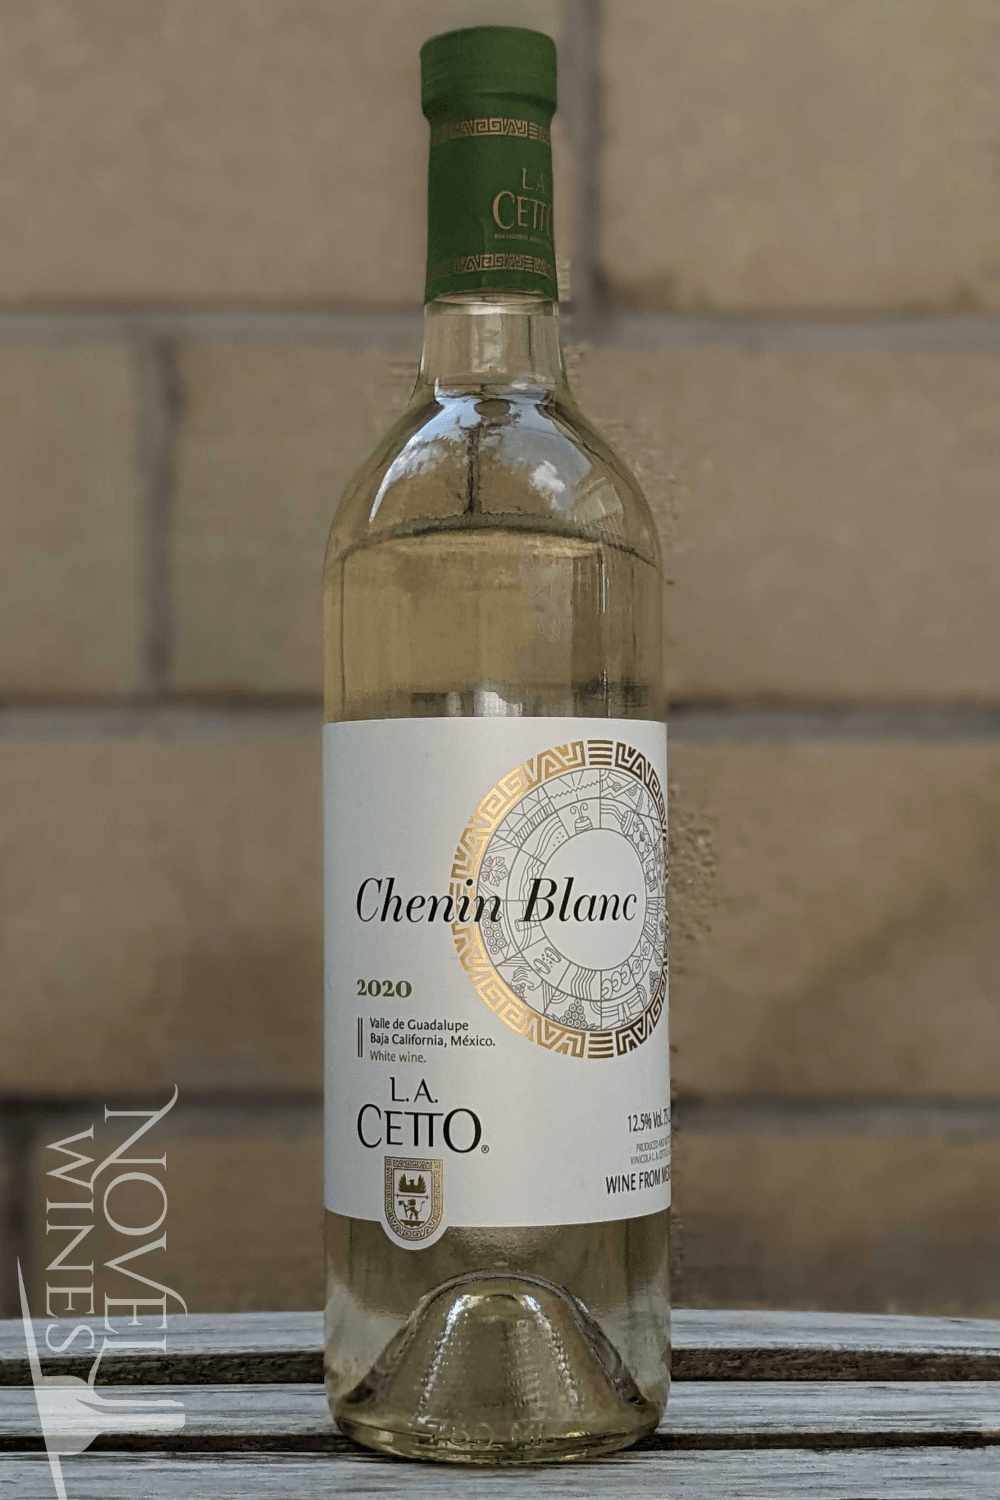 L. A. Cetto White Wine L. A. Cetto Chenin Blanc 2021, Mexico